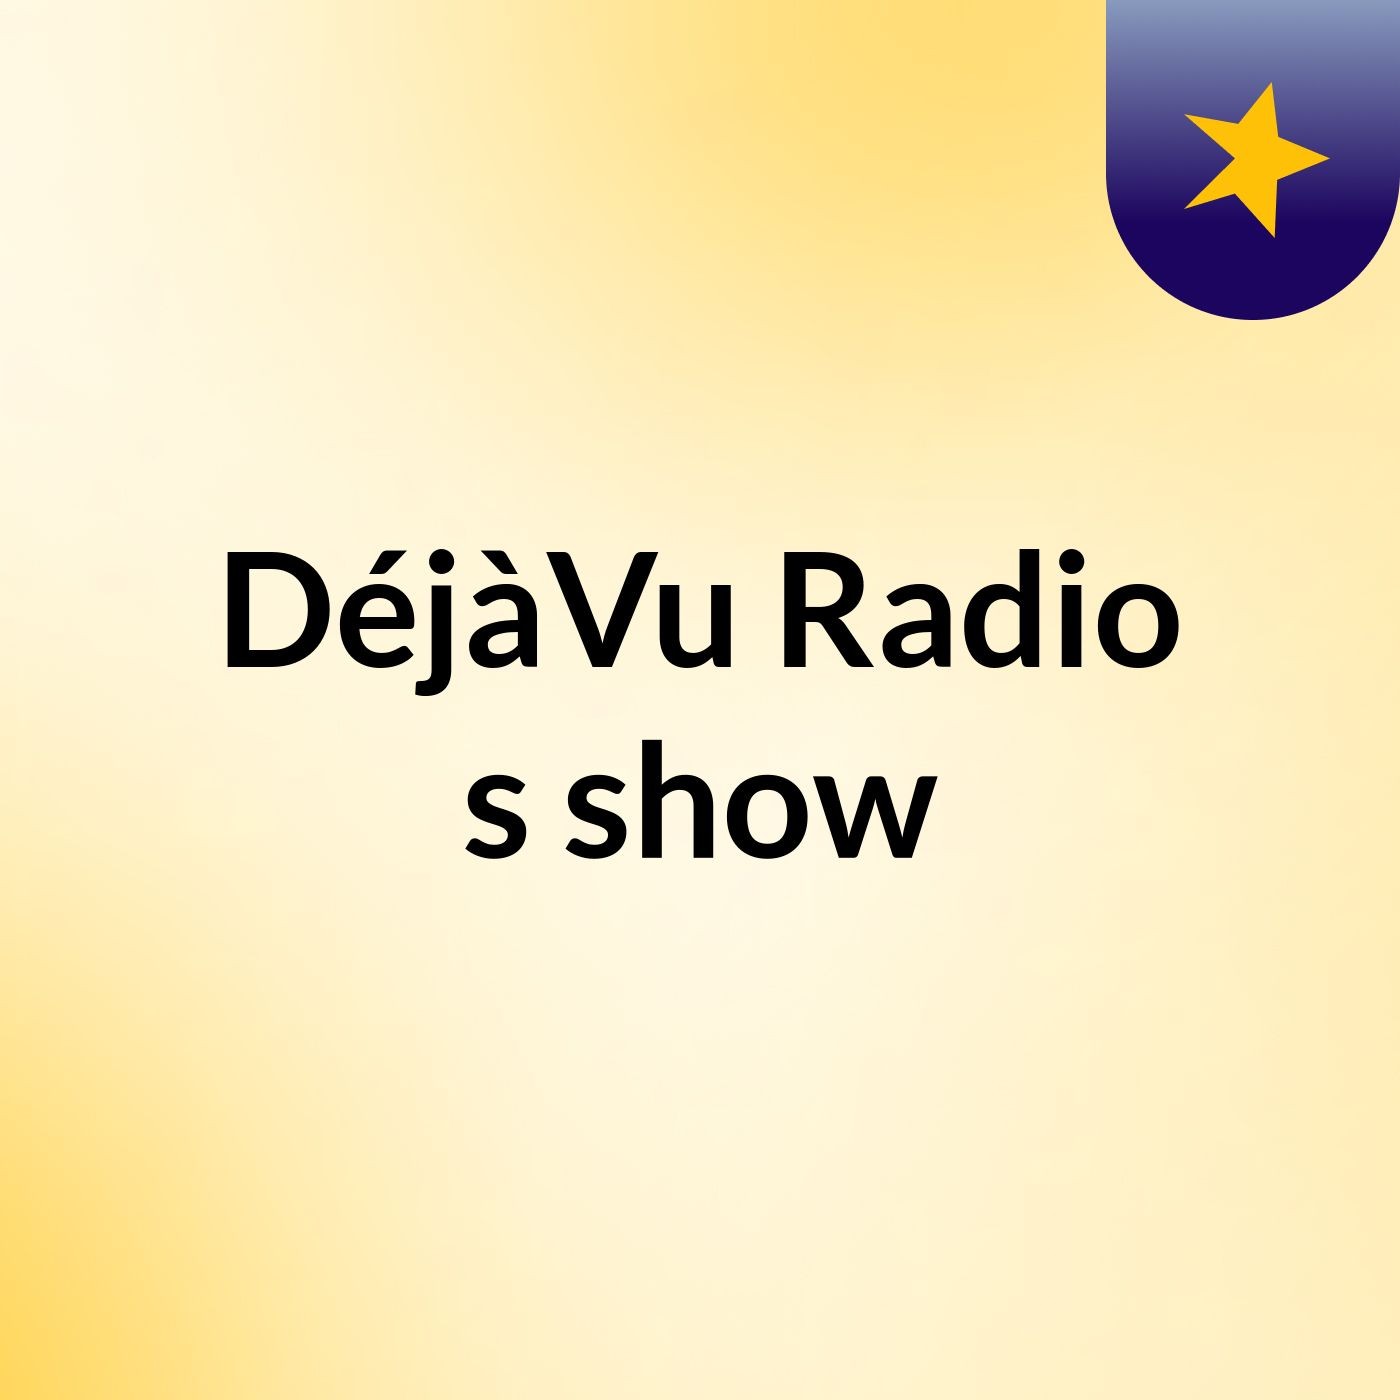 DéjàVu Radio's show